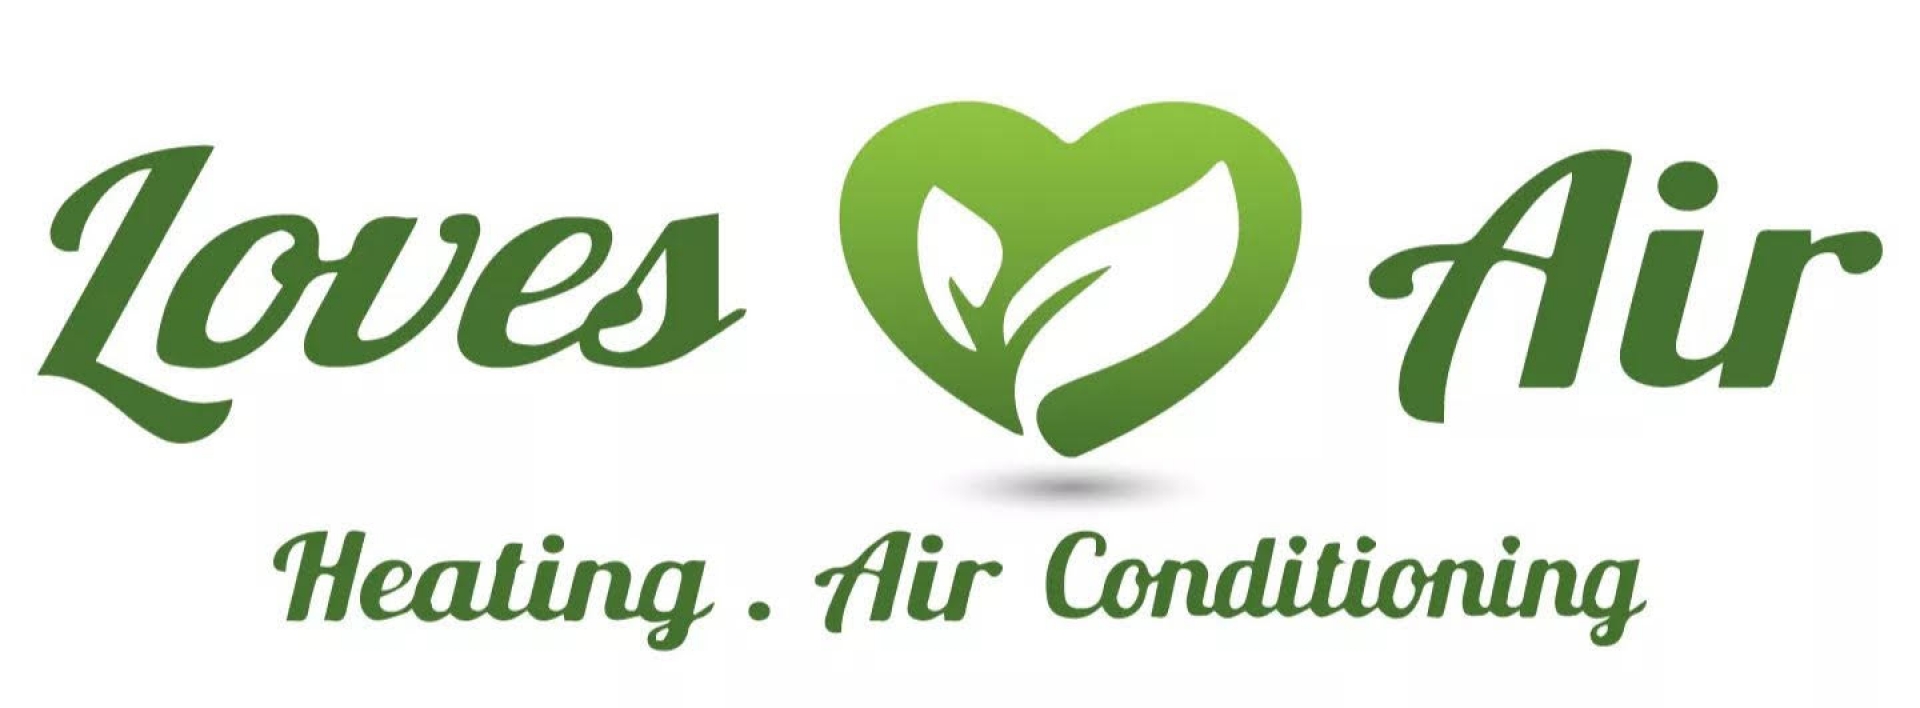 Loves Air company logo